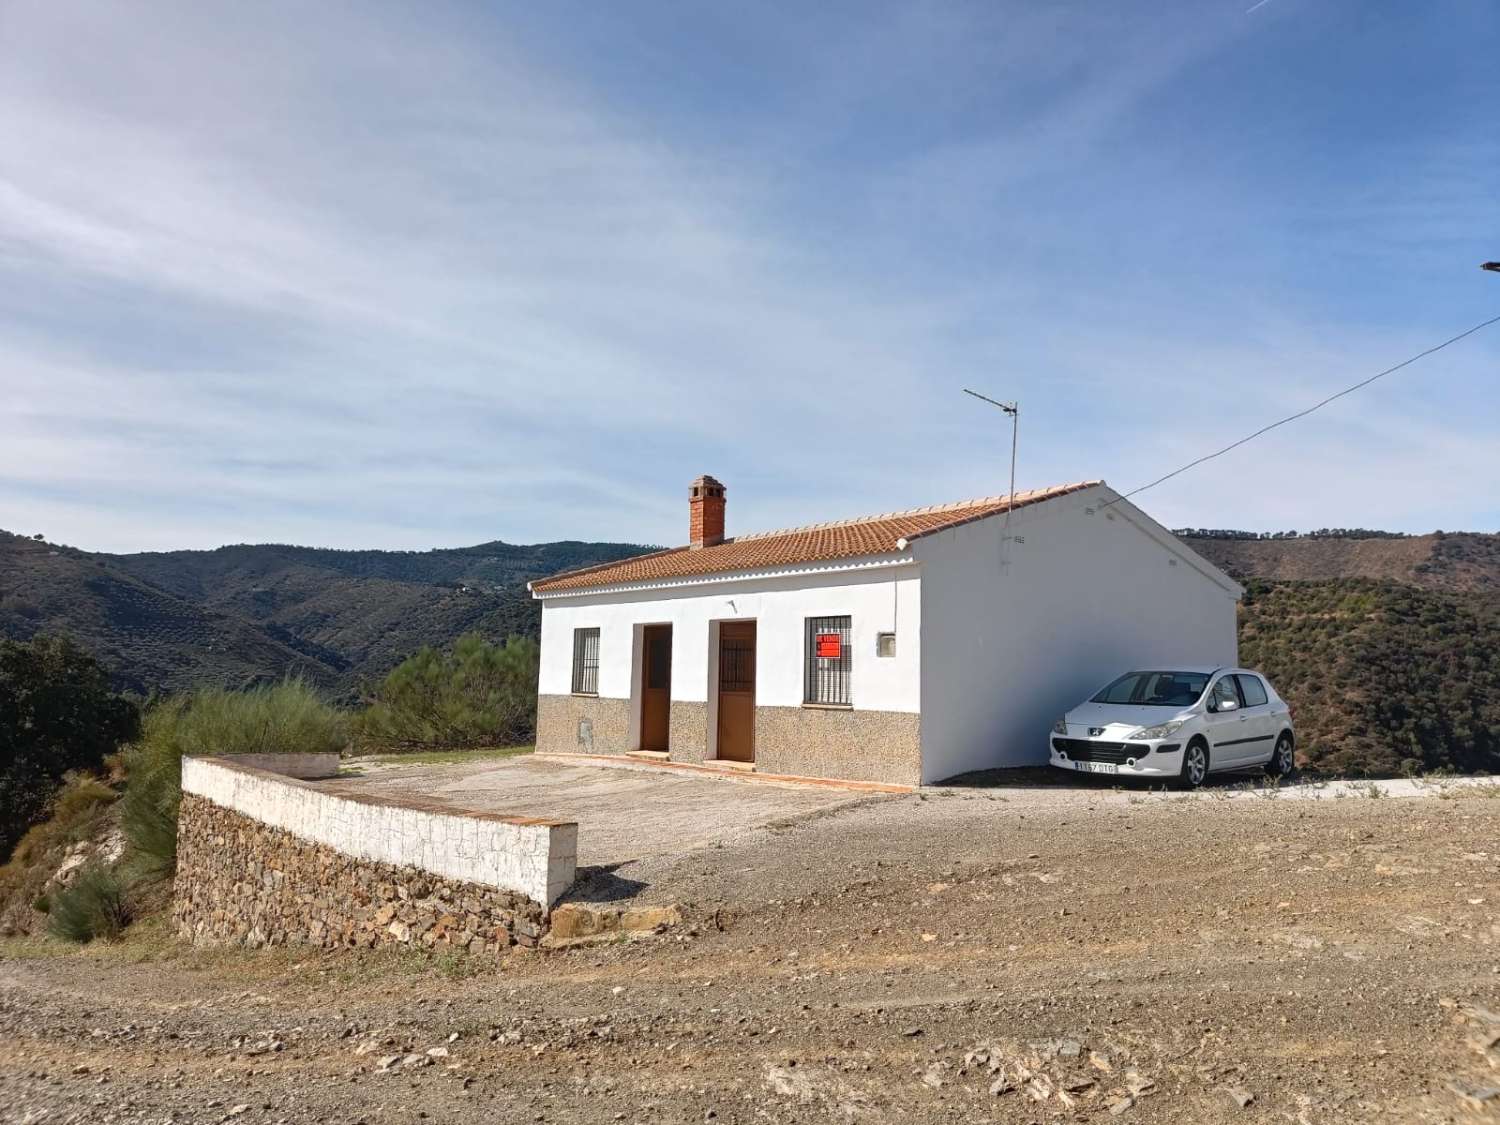 Rustic property on the Carretera de Colmenar